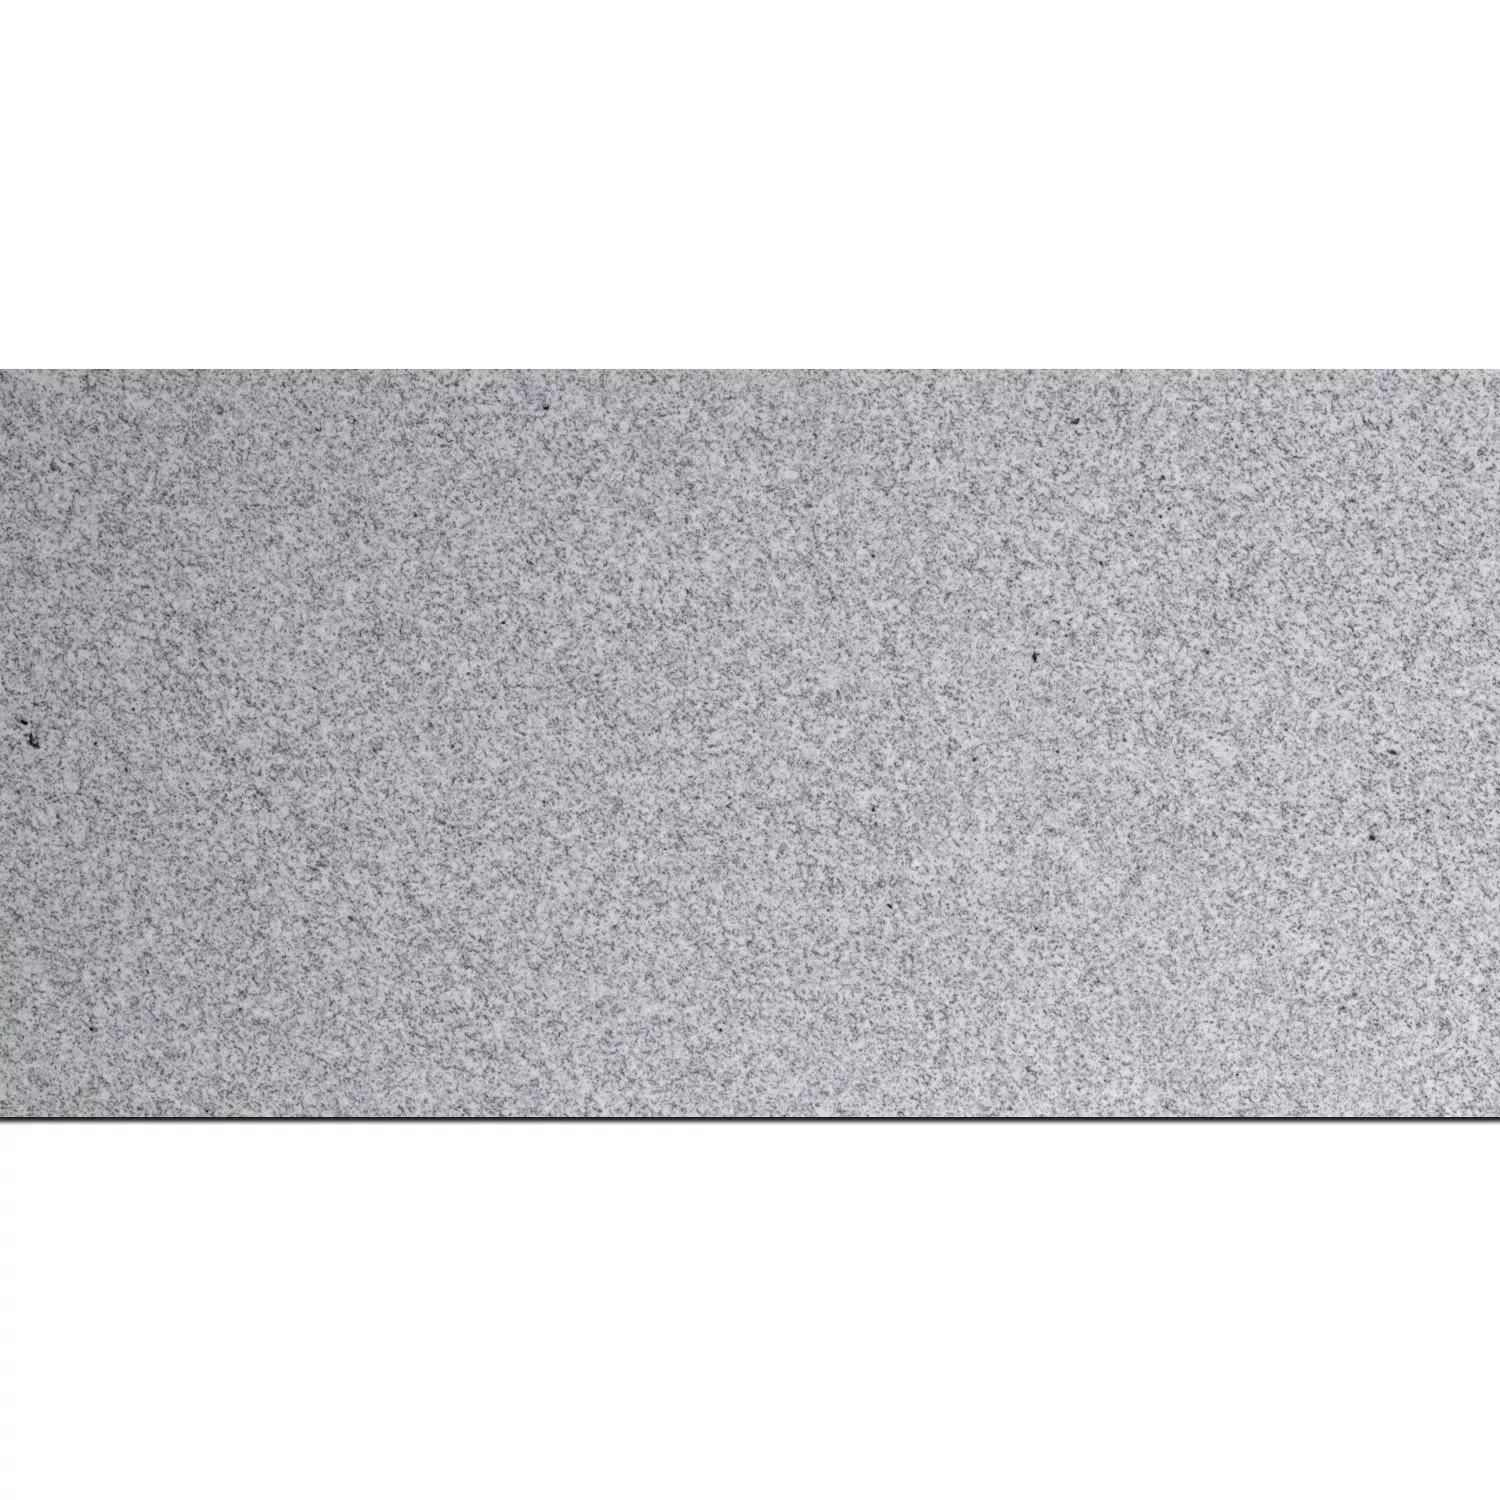 Πλακάκια Aπό Φυσική Πέτρα Γρανίτης Padang Light Αμεμπτος 30,5x61cm